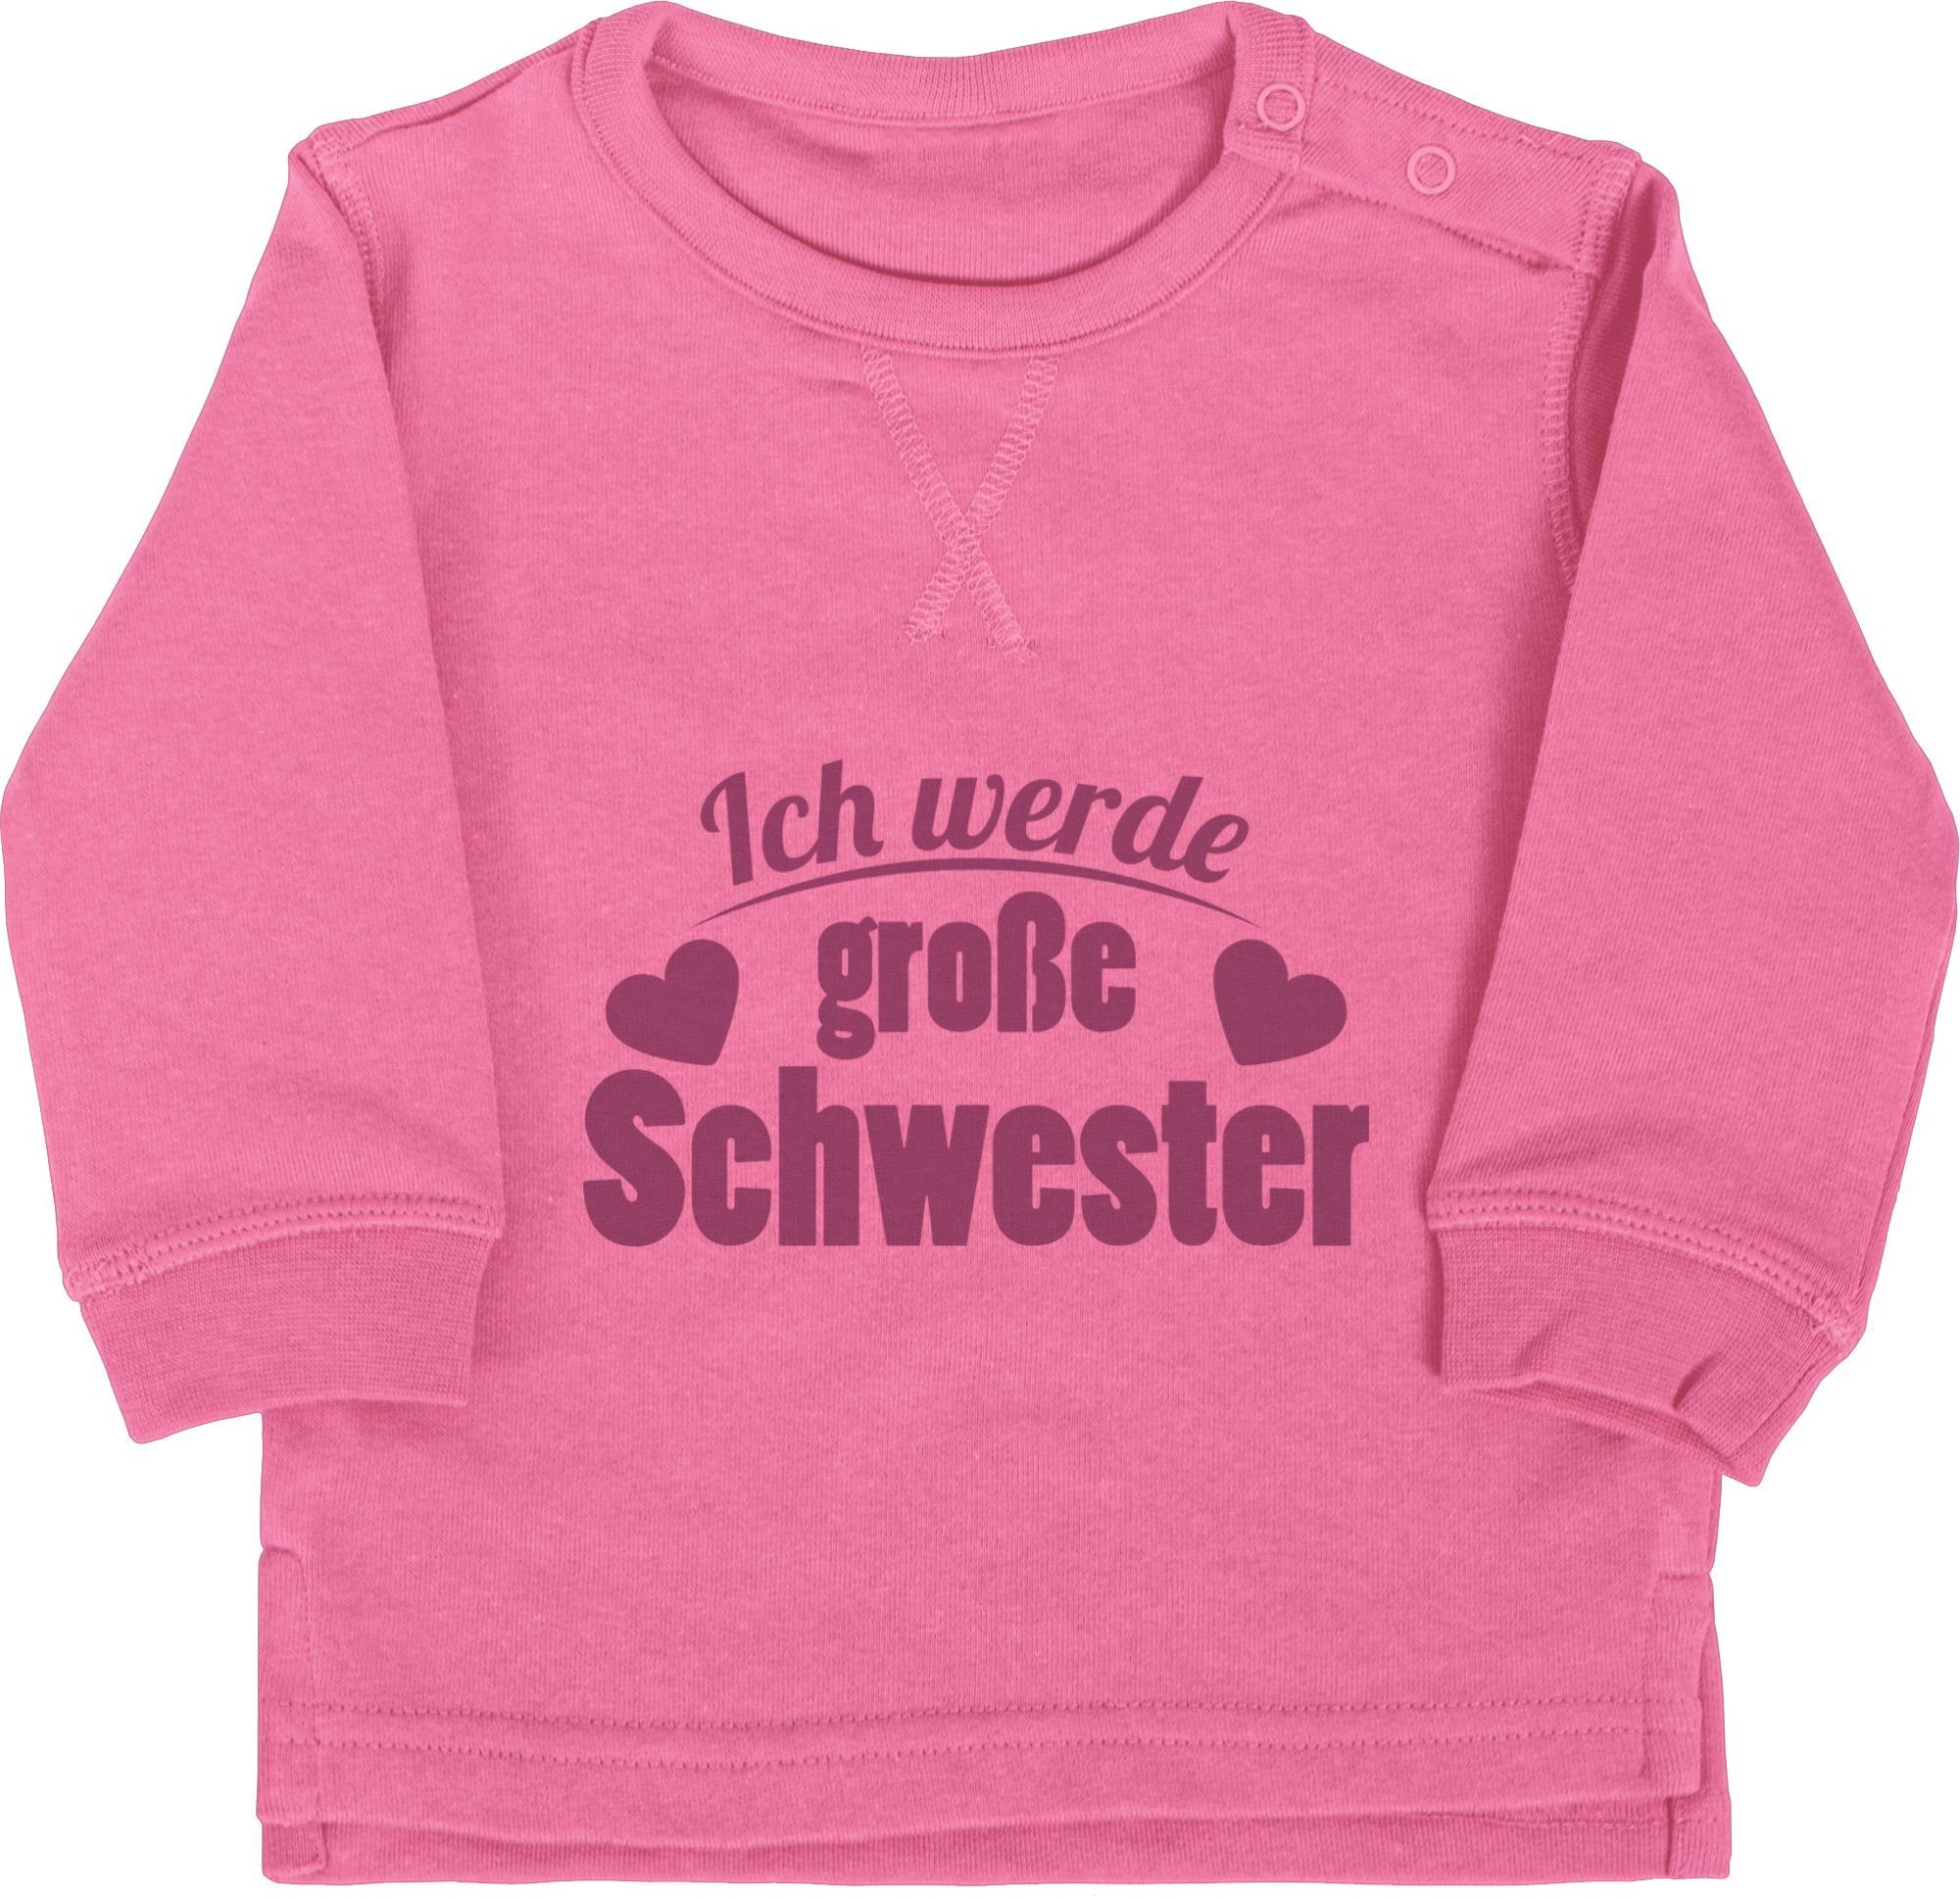 Shirtracer Schwester Ich große 2 Schwester Pink Große werde Sweatshirt